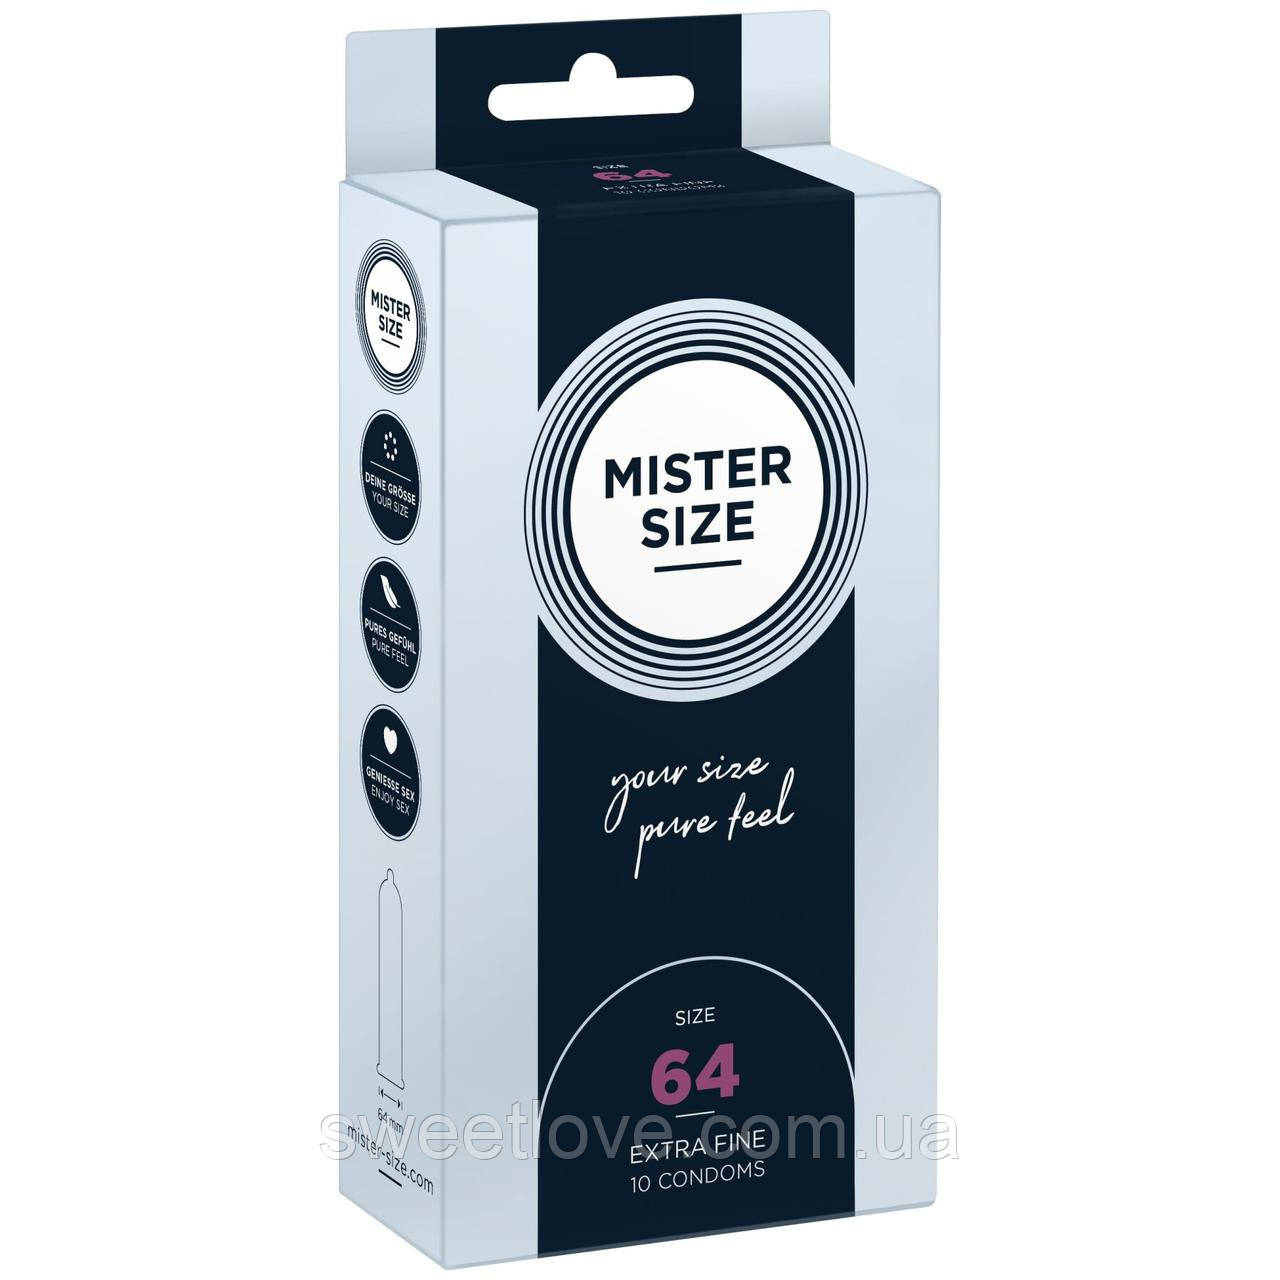 Презервативи Mister Size — pure feel — 64 (10 condoms), товщина 0,05 мм